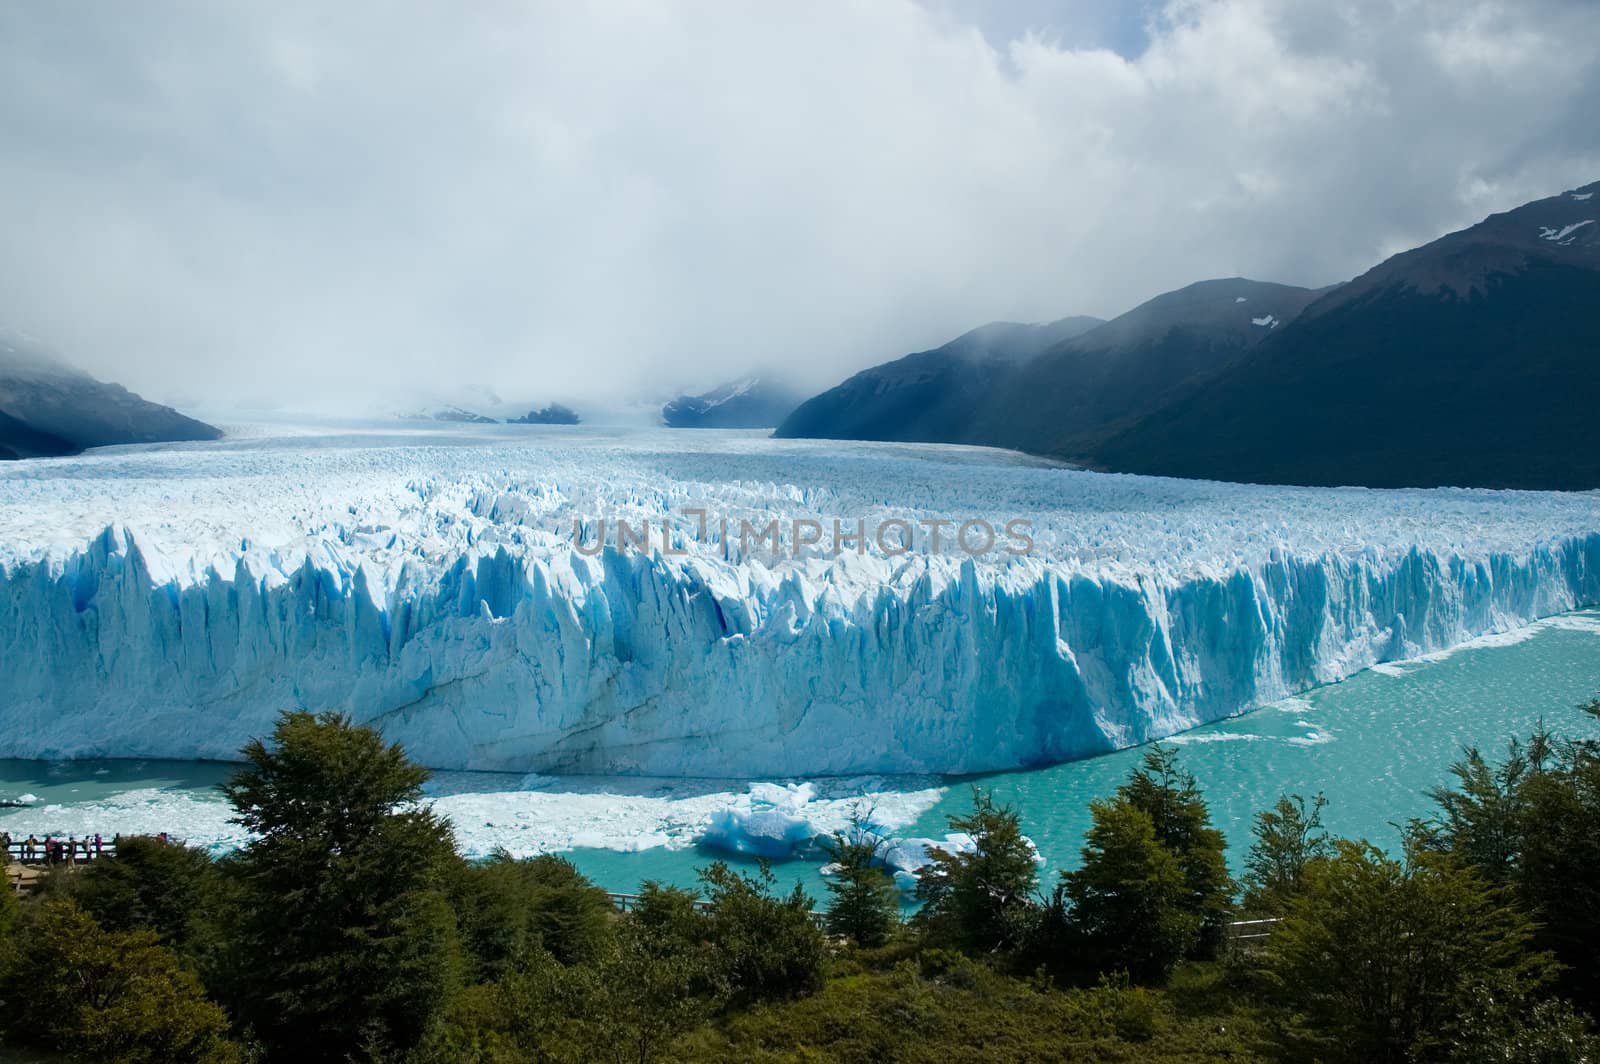 View of the magnificent Perito Moreno glacier, patagonia, Argentina.